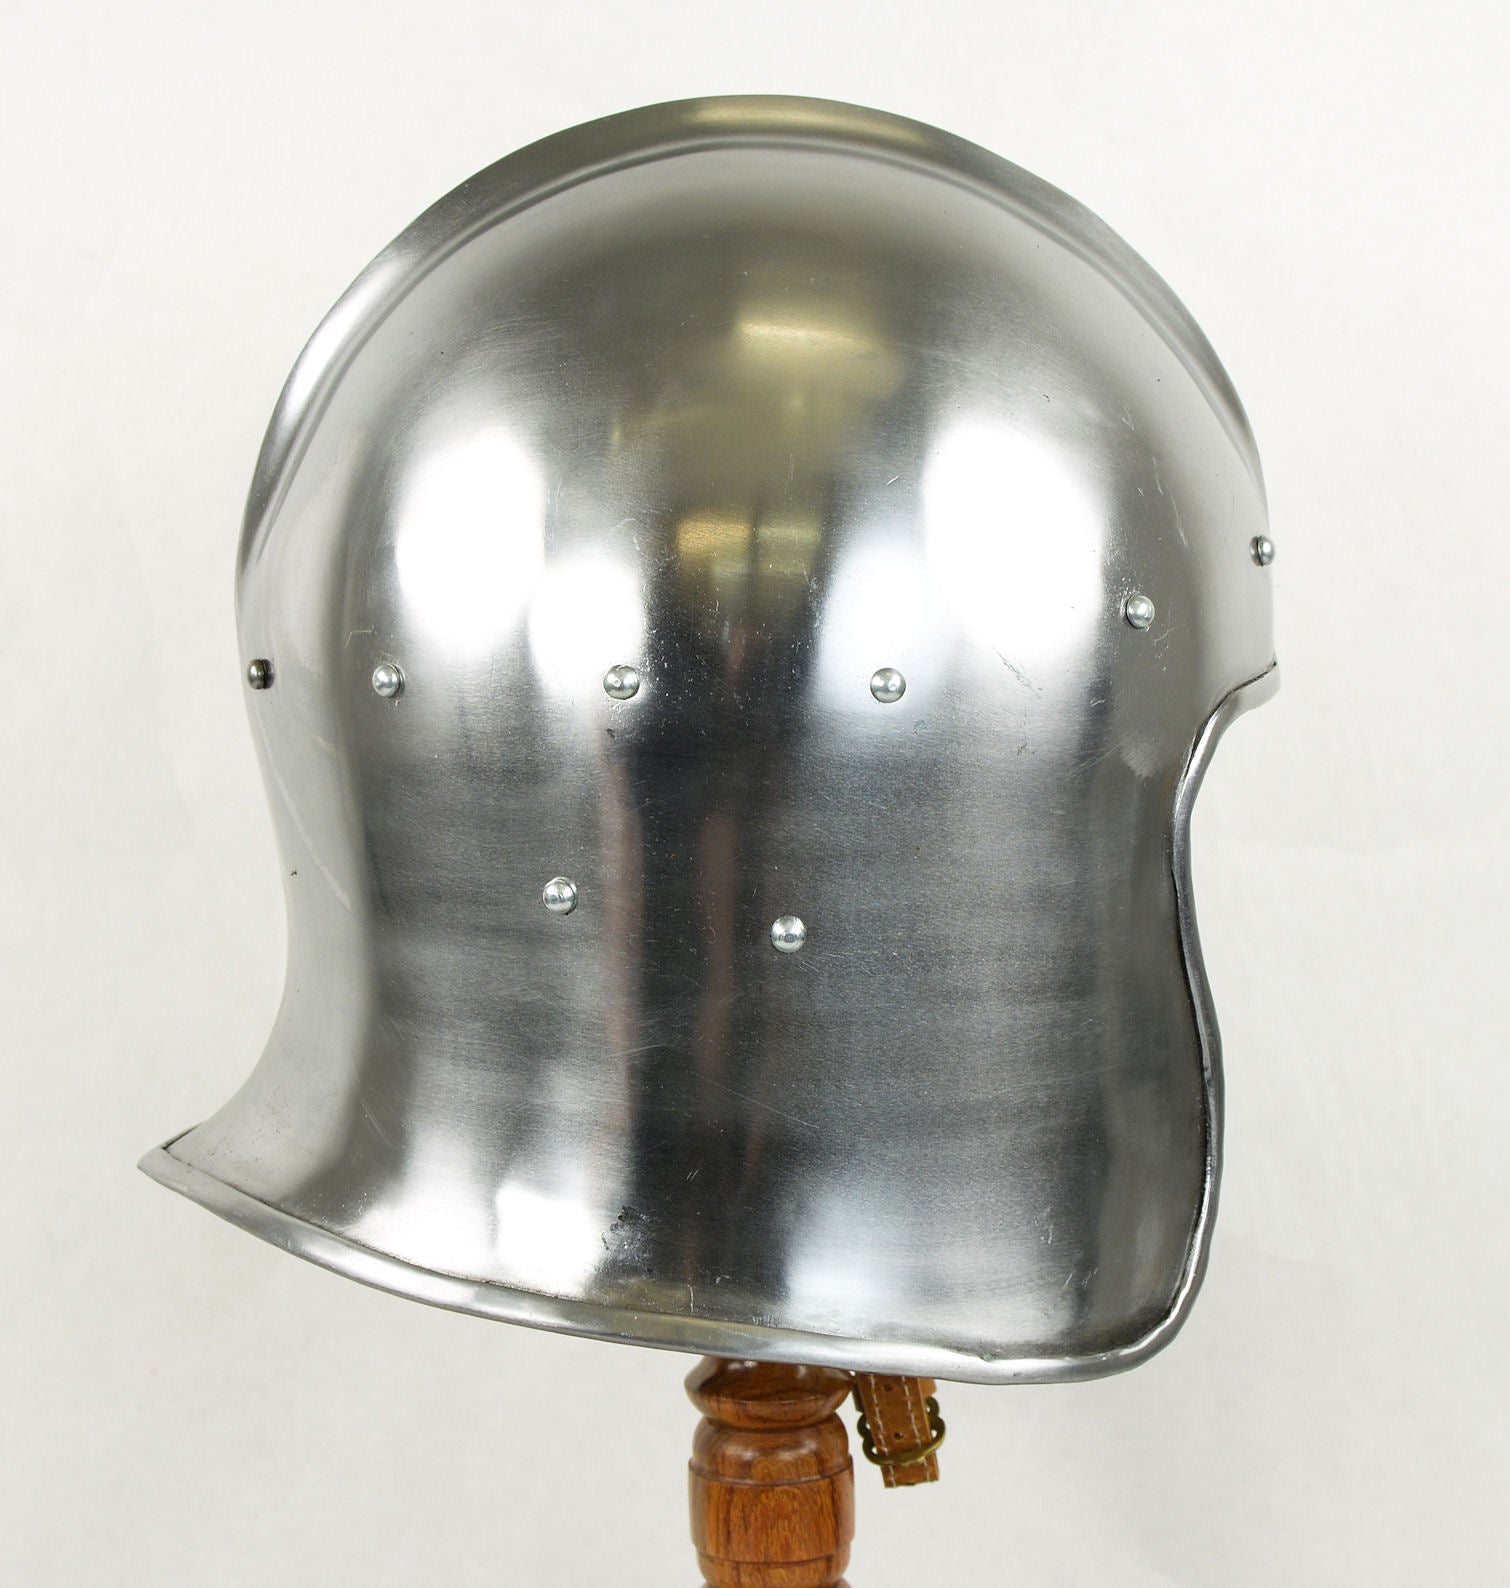 Celata Helm - 14 Gauge Steel